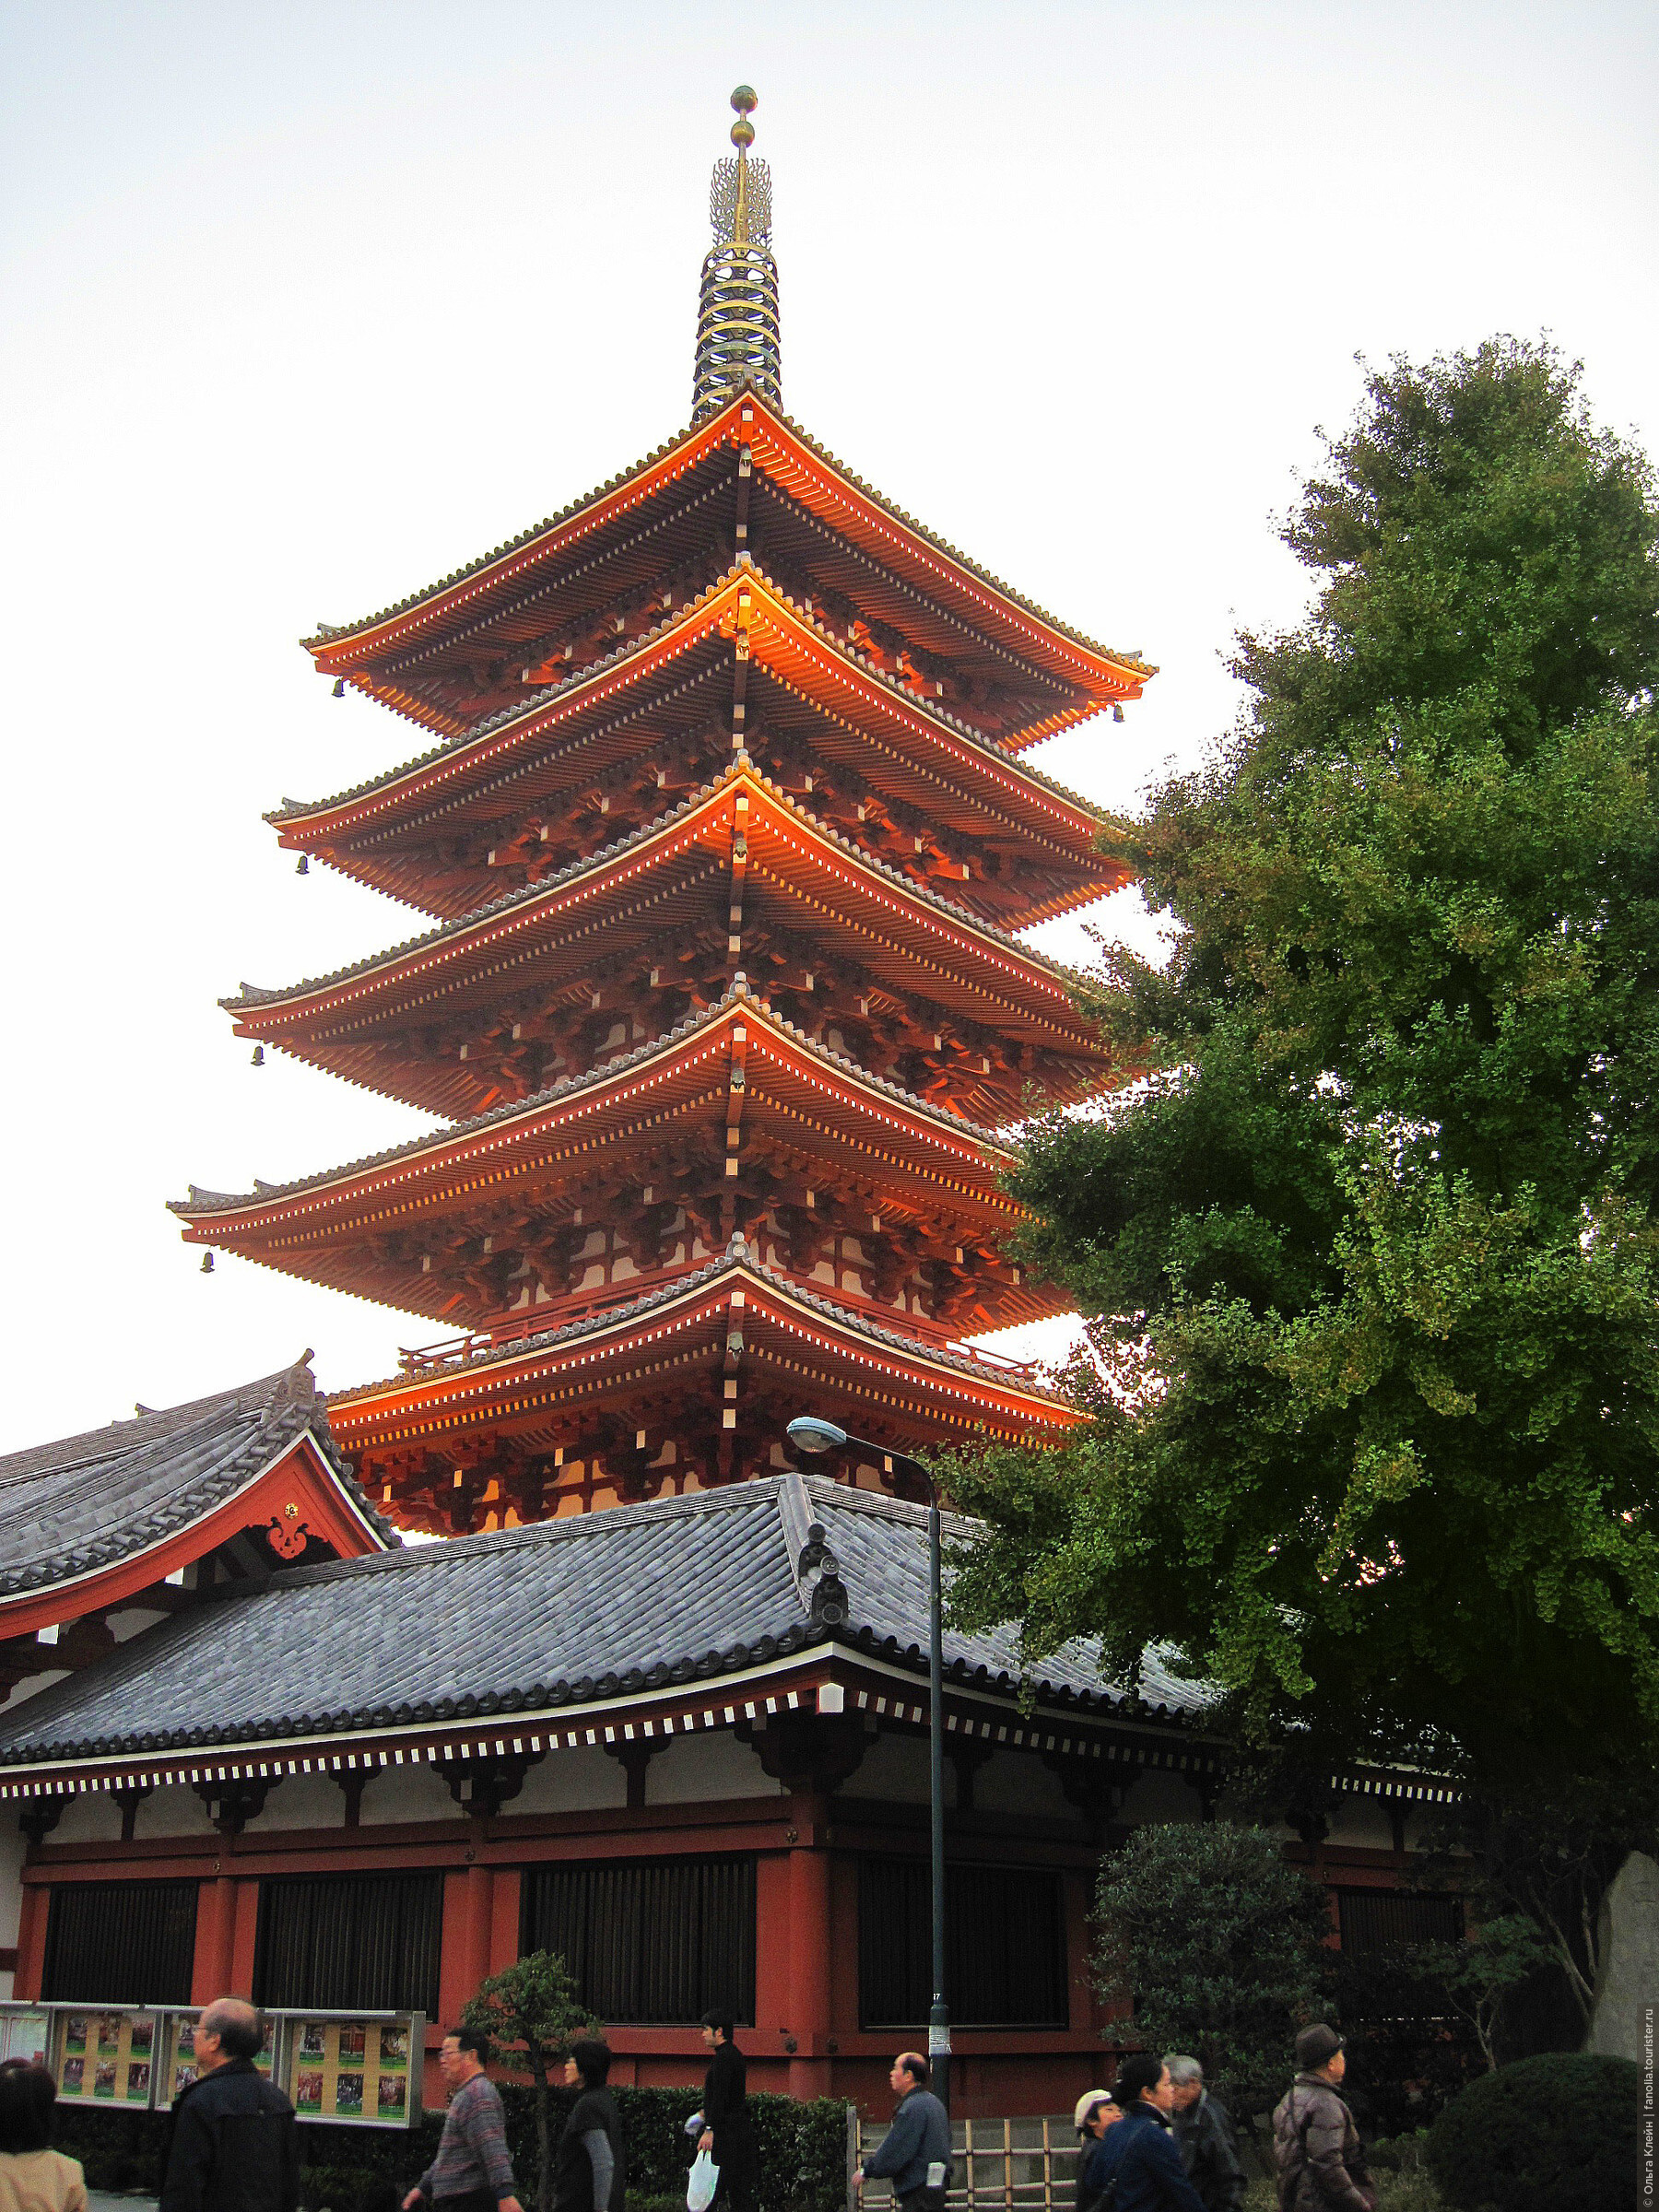 Токио, храм Асакуса» — фотоальбом пользователя fanolia на Туристер.Ру